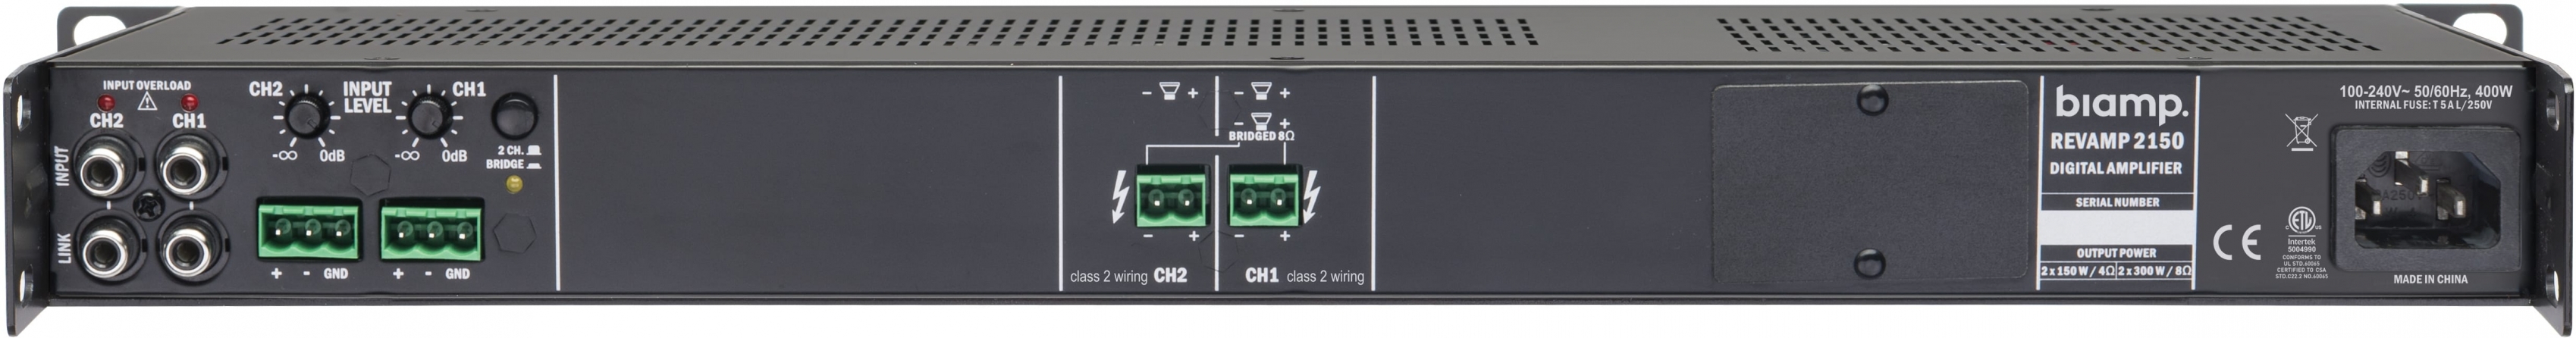 Amplificatore classe D Biamp REVAMP2150, 2 canali